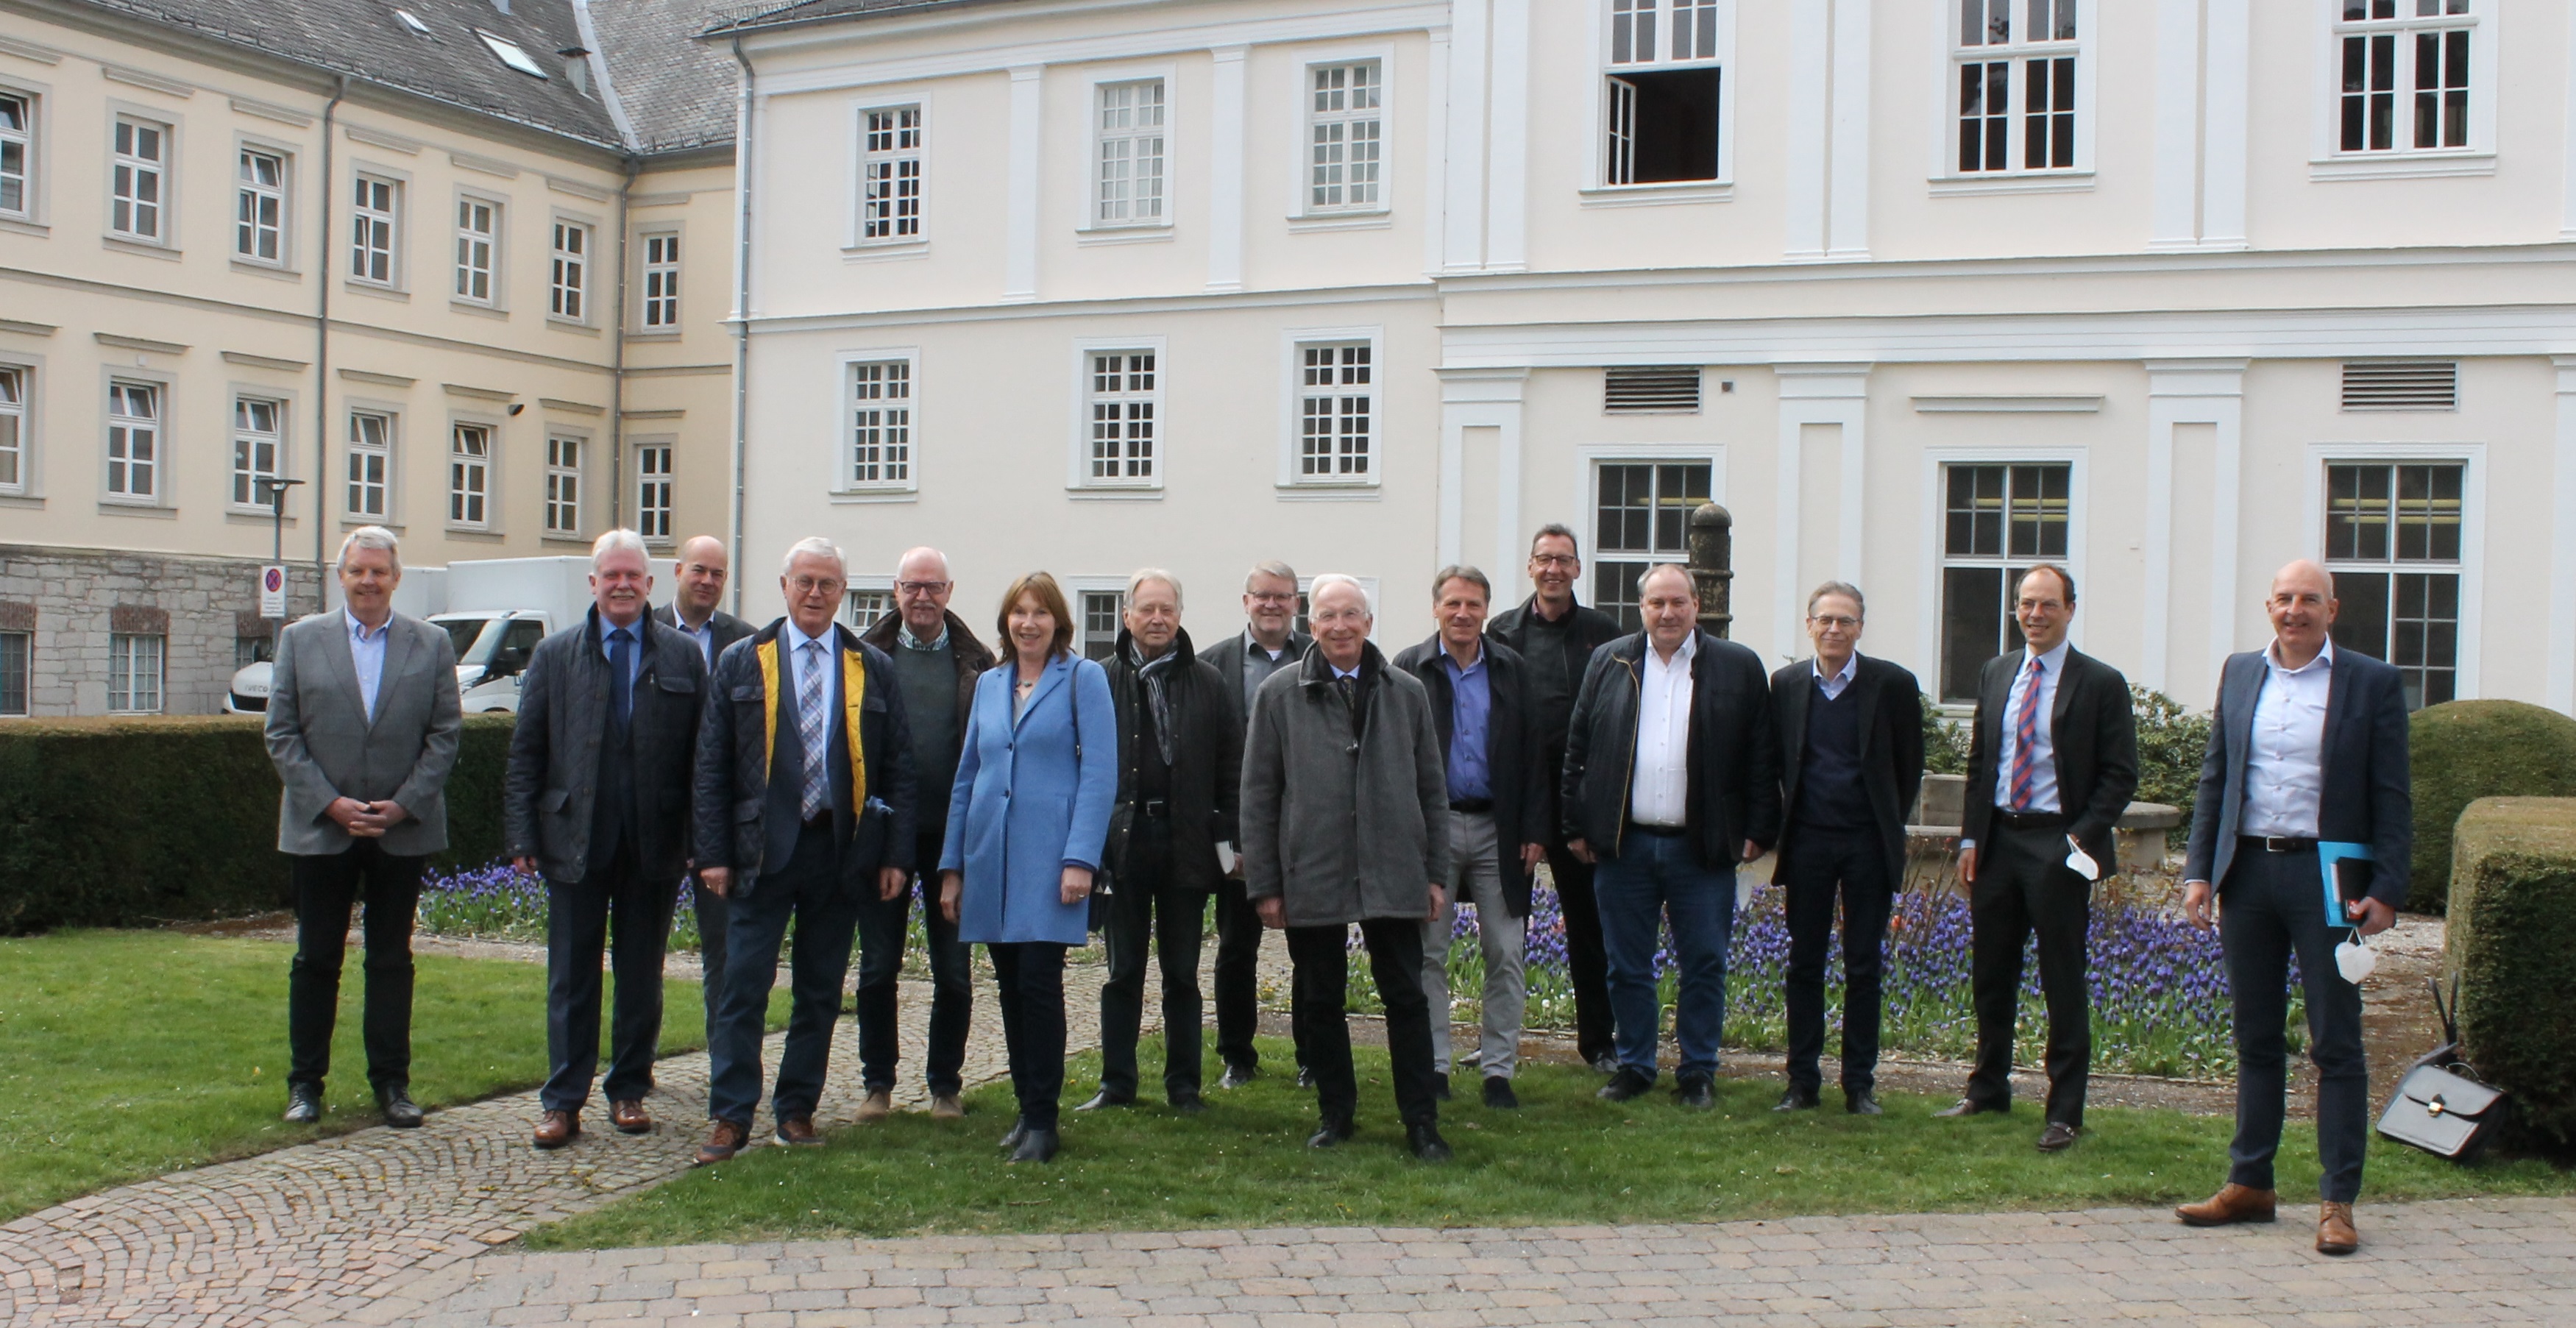 CDU-Fraktion der Landschaftsversammlung Westfalen-Lippe besucht LWL-Einrichtungen in Marsberg